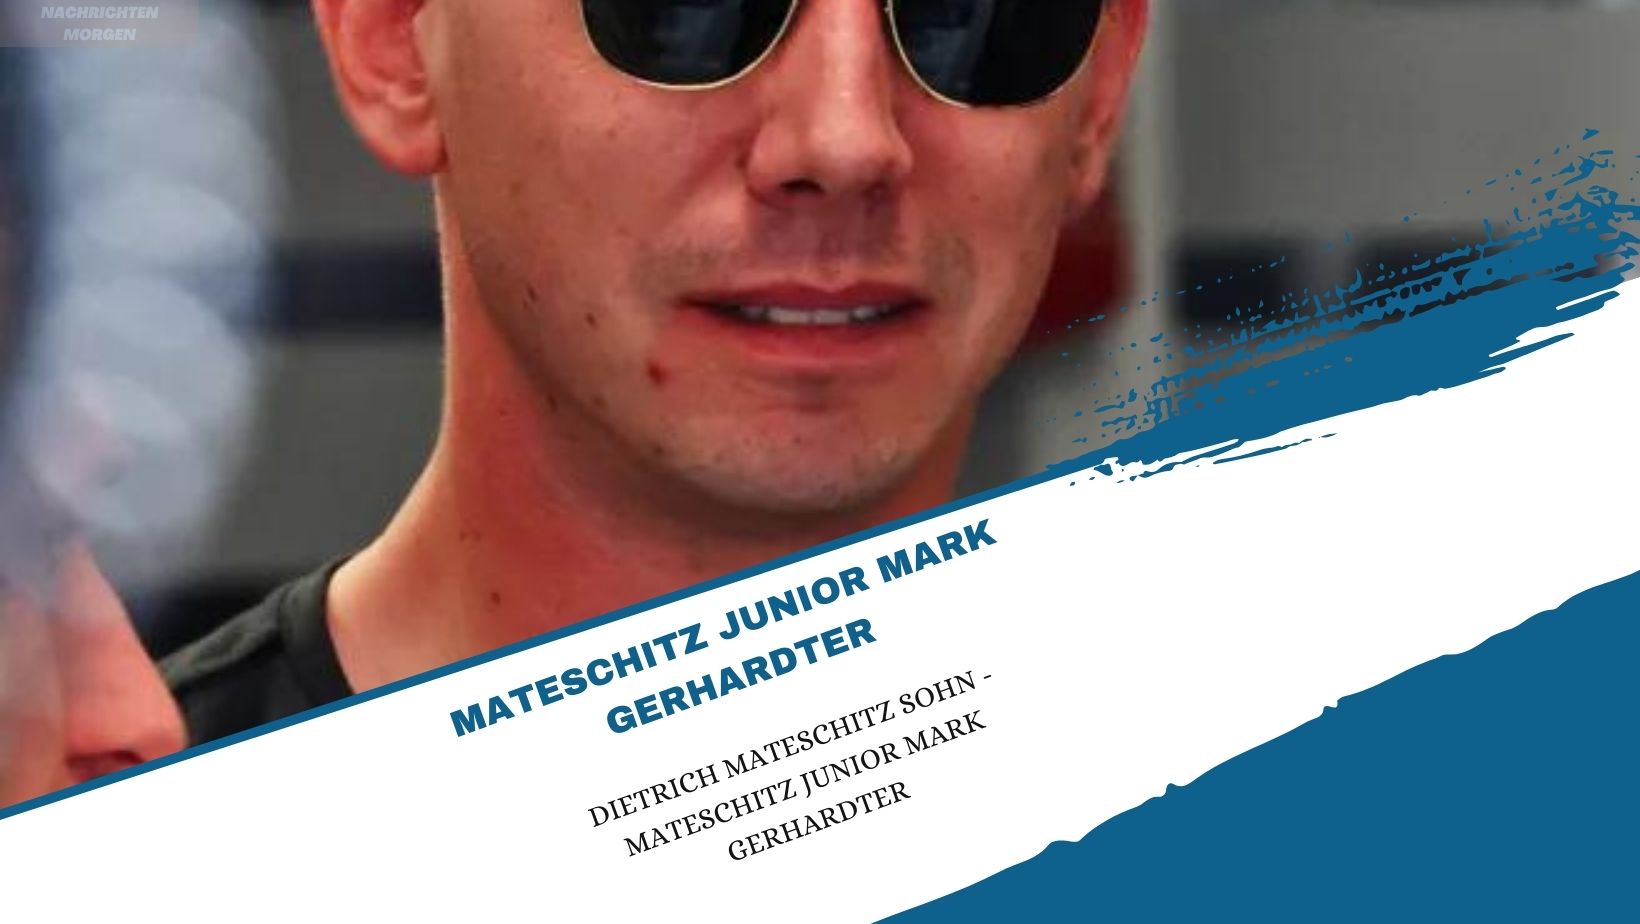 mateschitz junior mark gerhardter